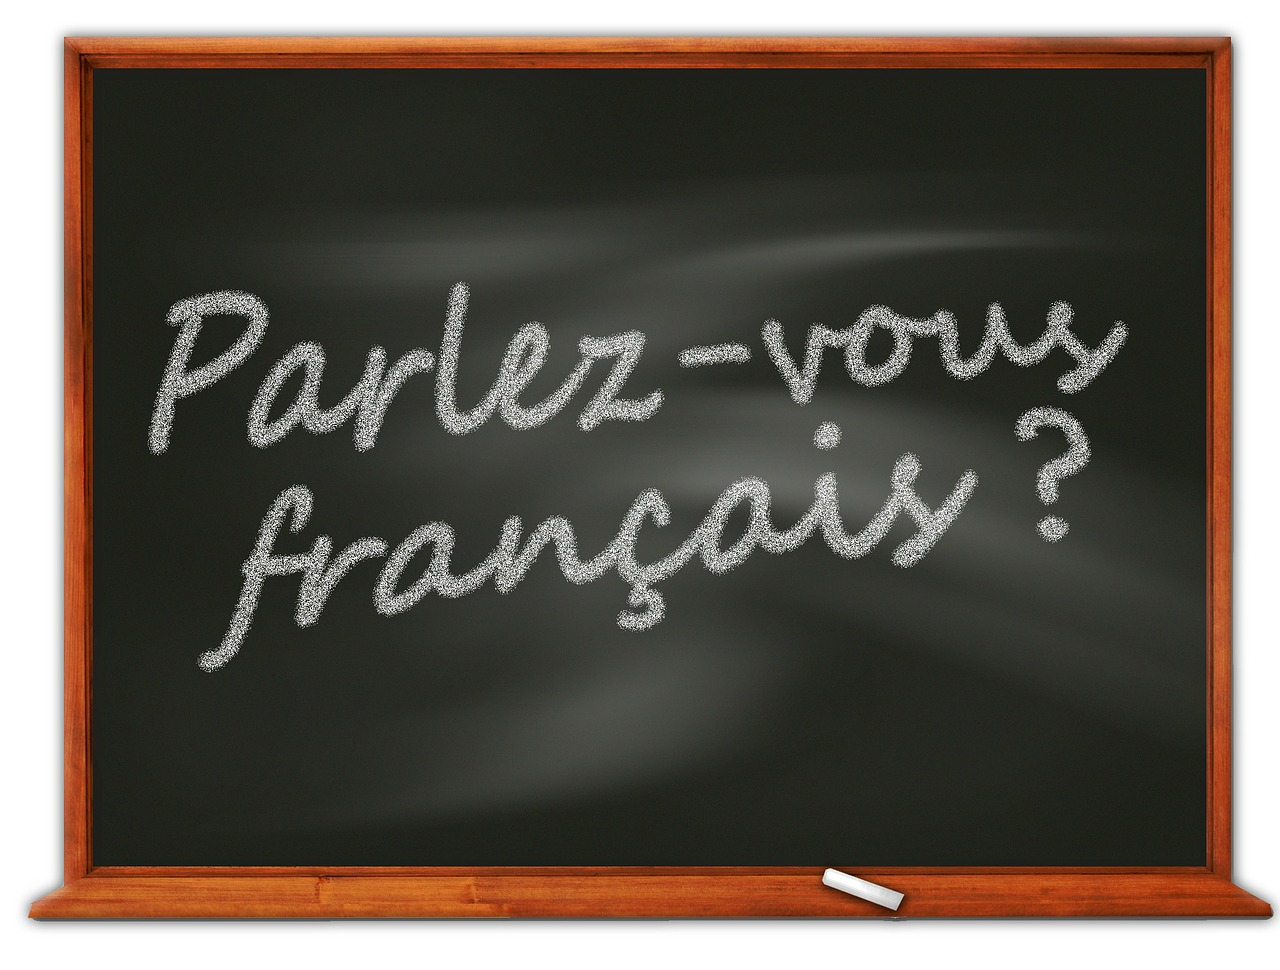 Studiare il francese serve? Ecco 10 ragioni per farlo